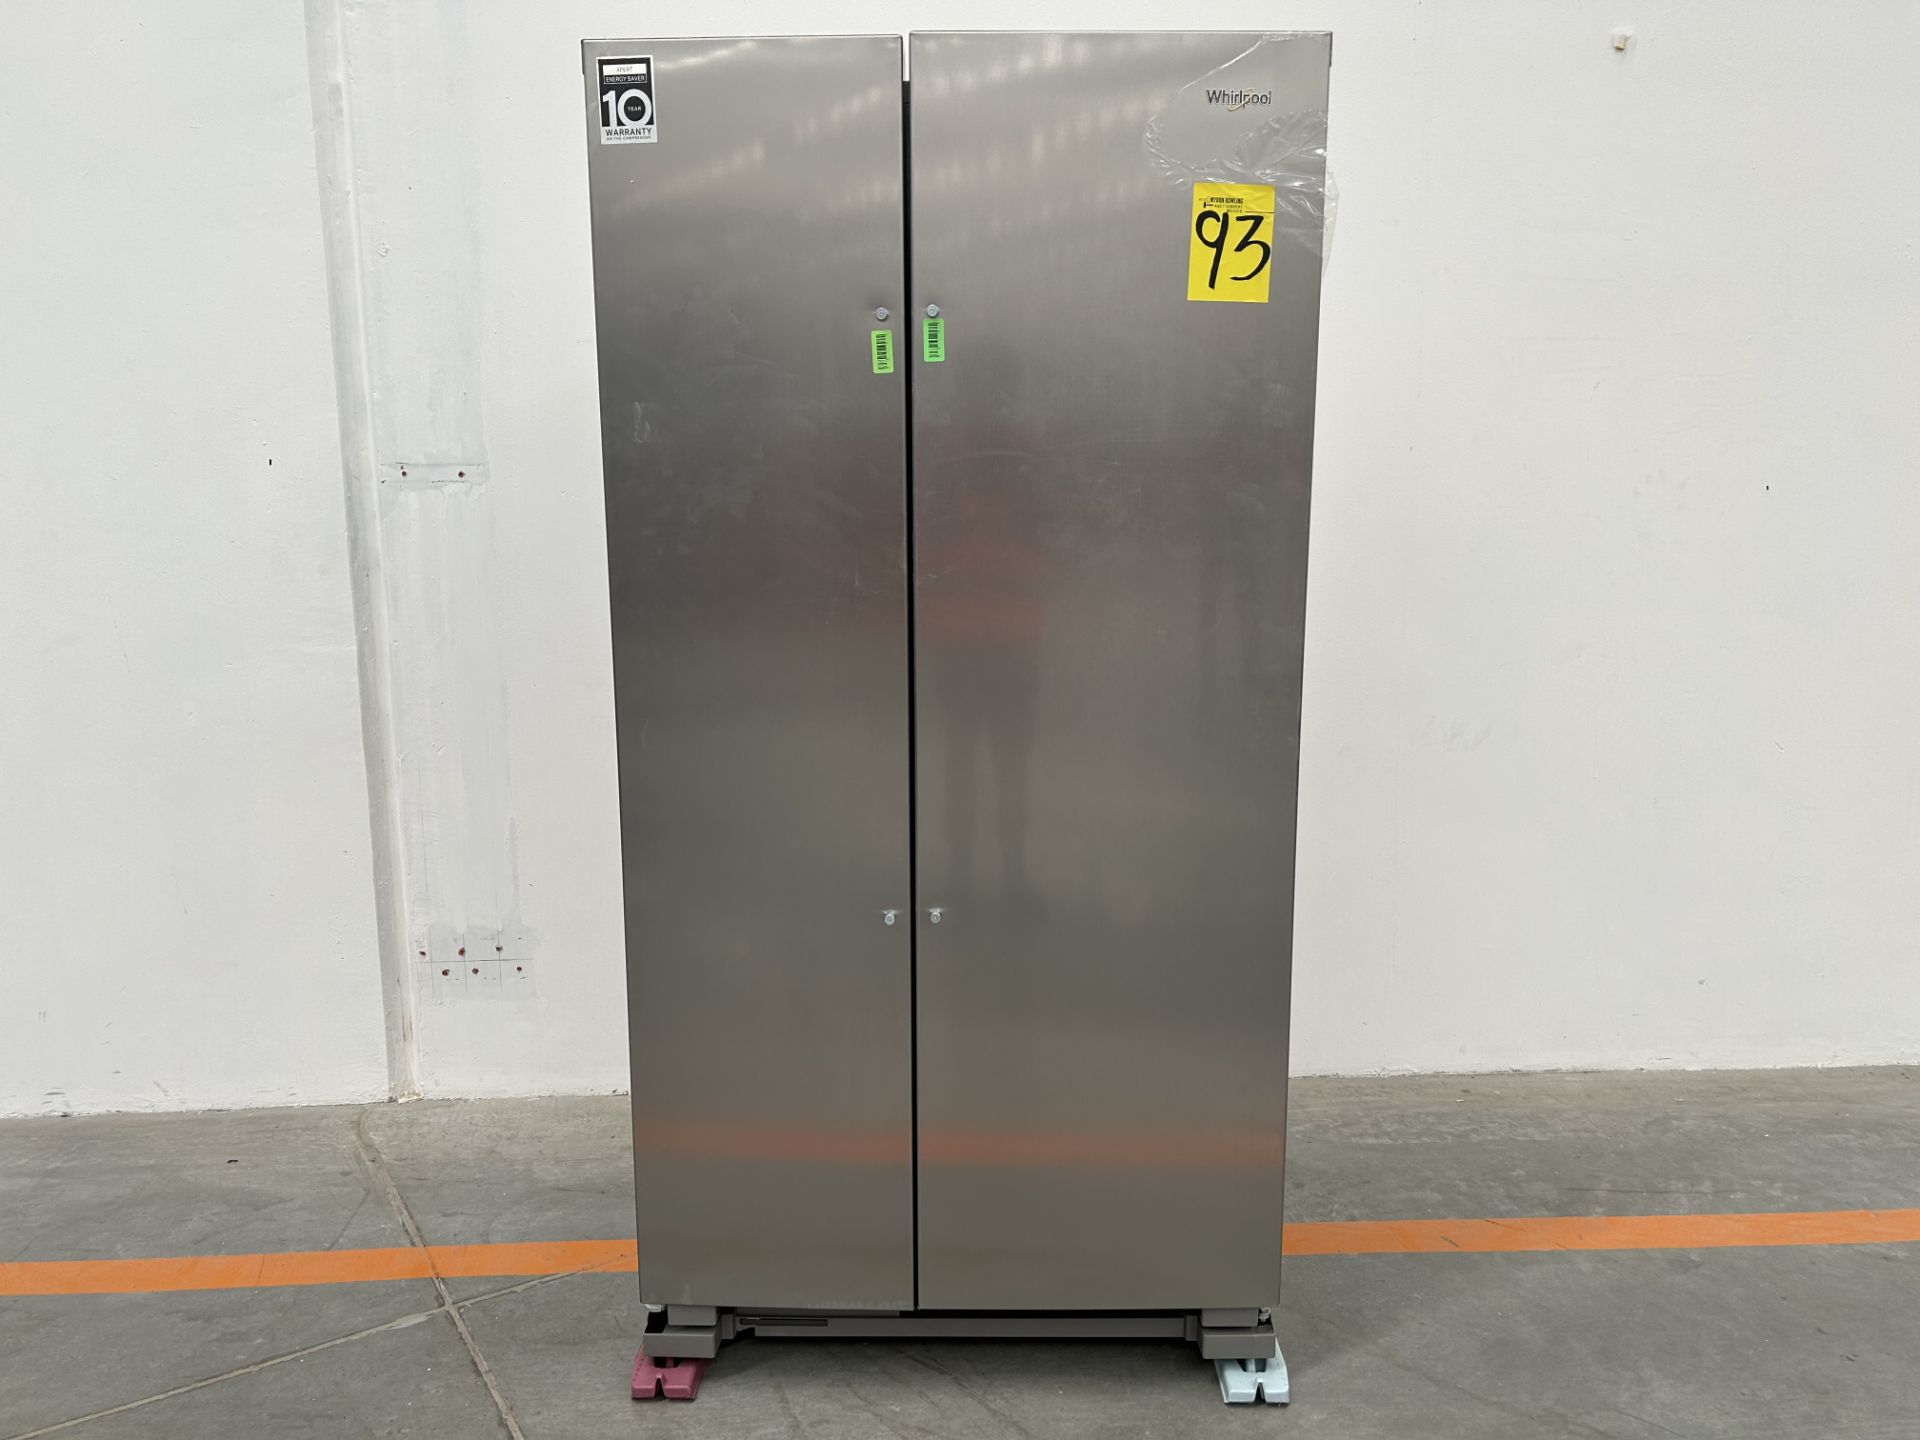 (NUEVO) Refrigerador Marca WHIRLPOOL, Modelo WD5600S, Serie 221168, Color GRIS